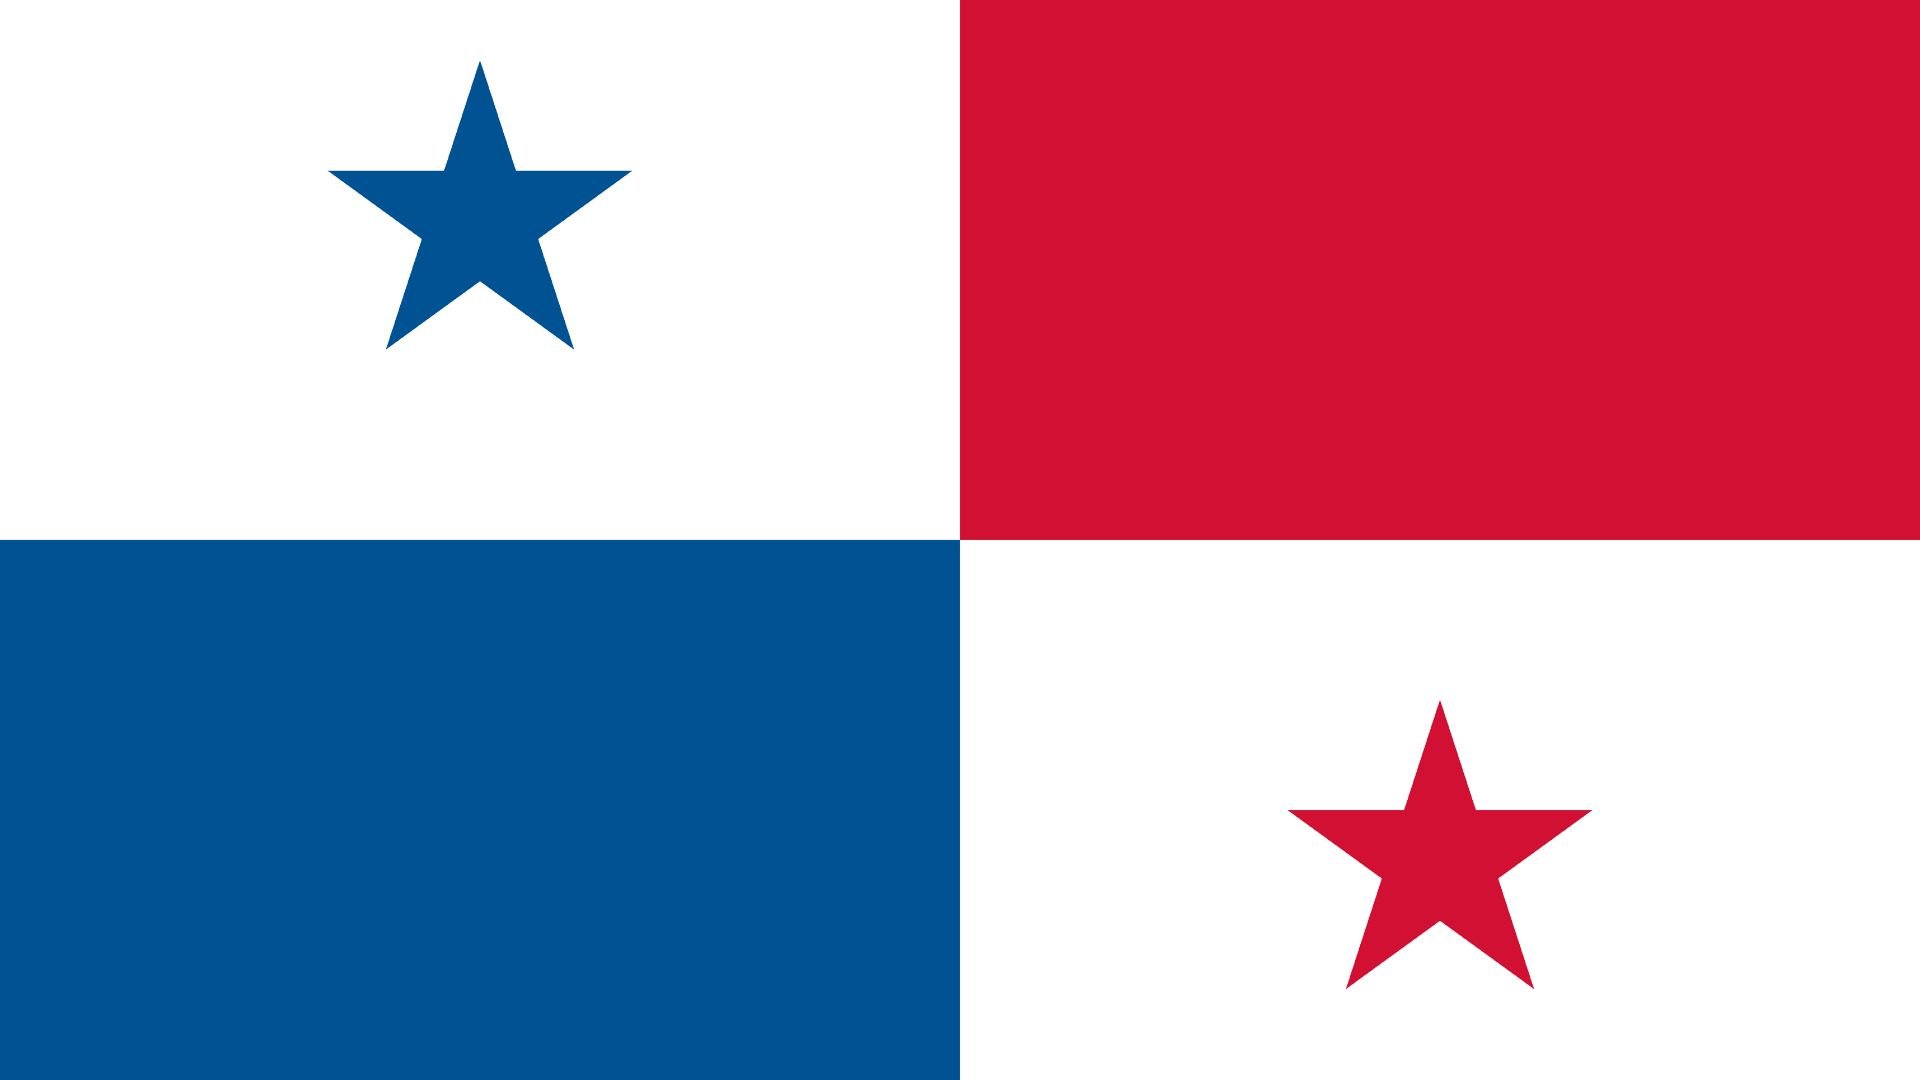 A bandeira do Panamá consiste em um retângulo dividido em quatro partes iguais, onde o canto superior esquerdo possui uma estrela azul de cinco pontas sobre um fundo branco, o canto superior direito é vermelho, o canto inferior esquerdo é azul, e a parte inferior direita possui uma estrela de cinco pontas vermelha sobre fundo branco.